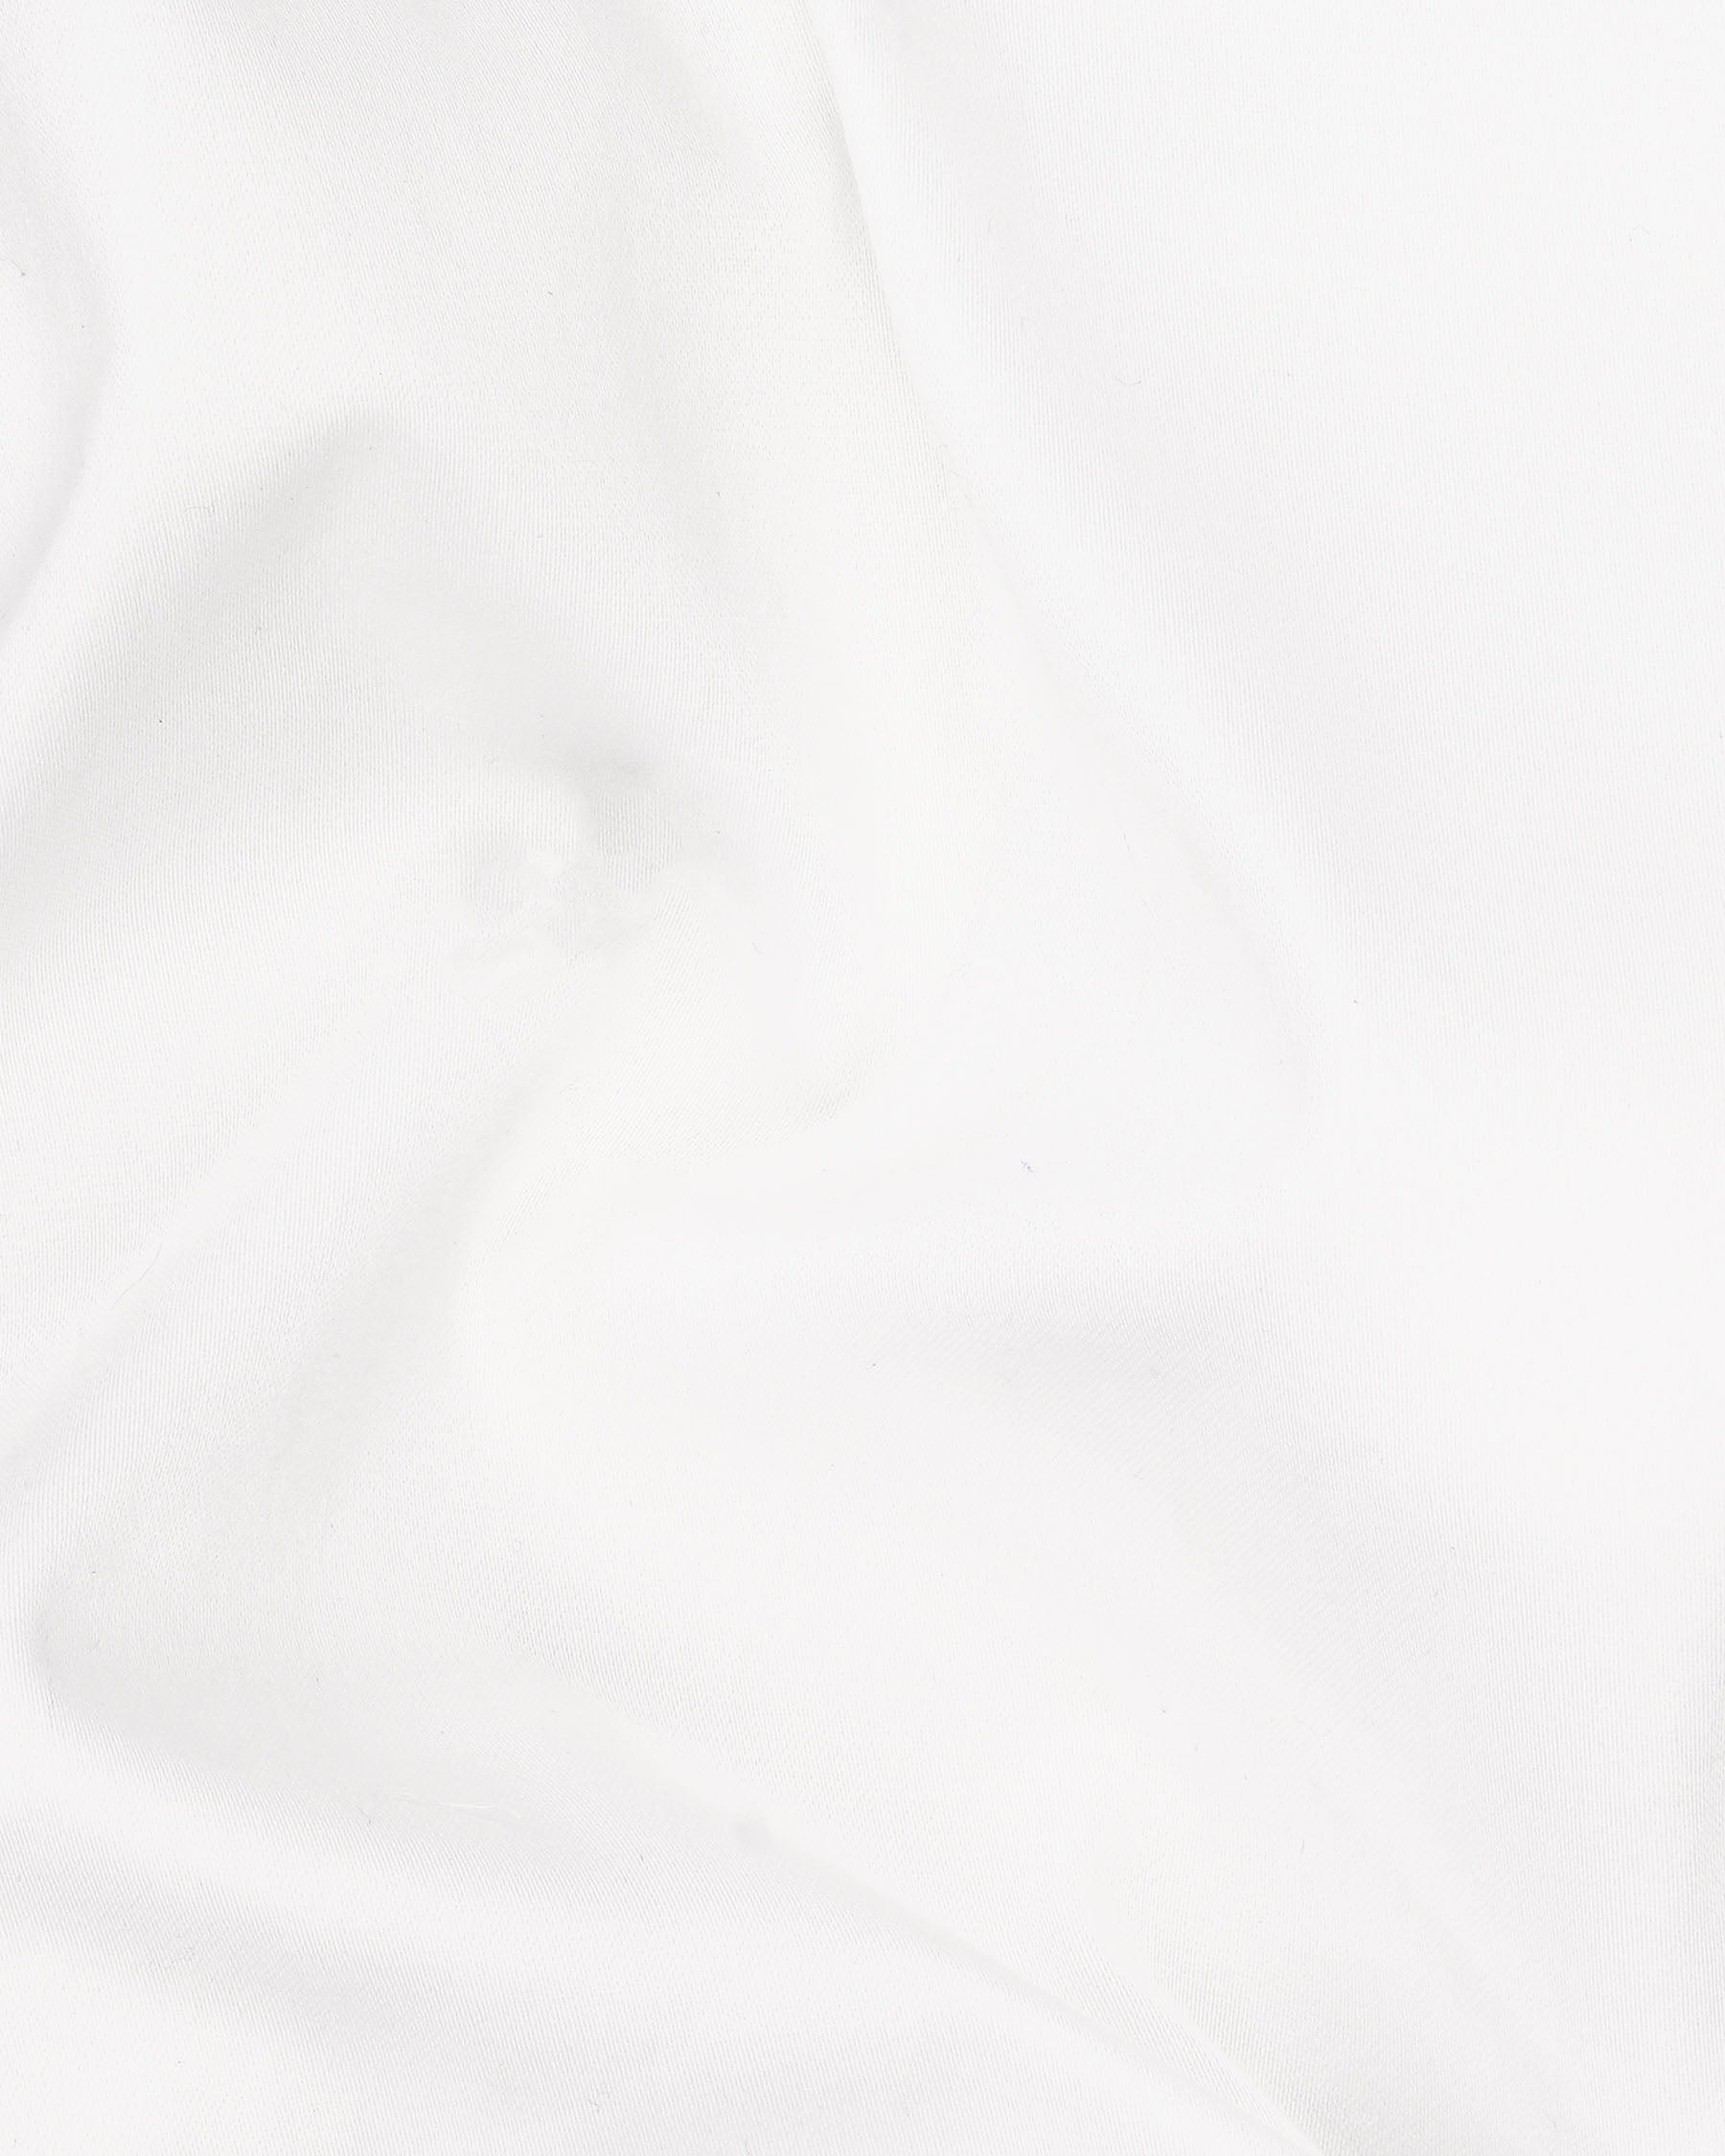 Bright White with Jade Black Striped Super Soft Premium Cotton Designer Shorts SR146-28, SR146-30, SR146-32, SR146-34, SR146-36, SR146-38, SR146-40, SR146-42, SR146-44